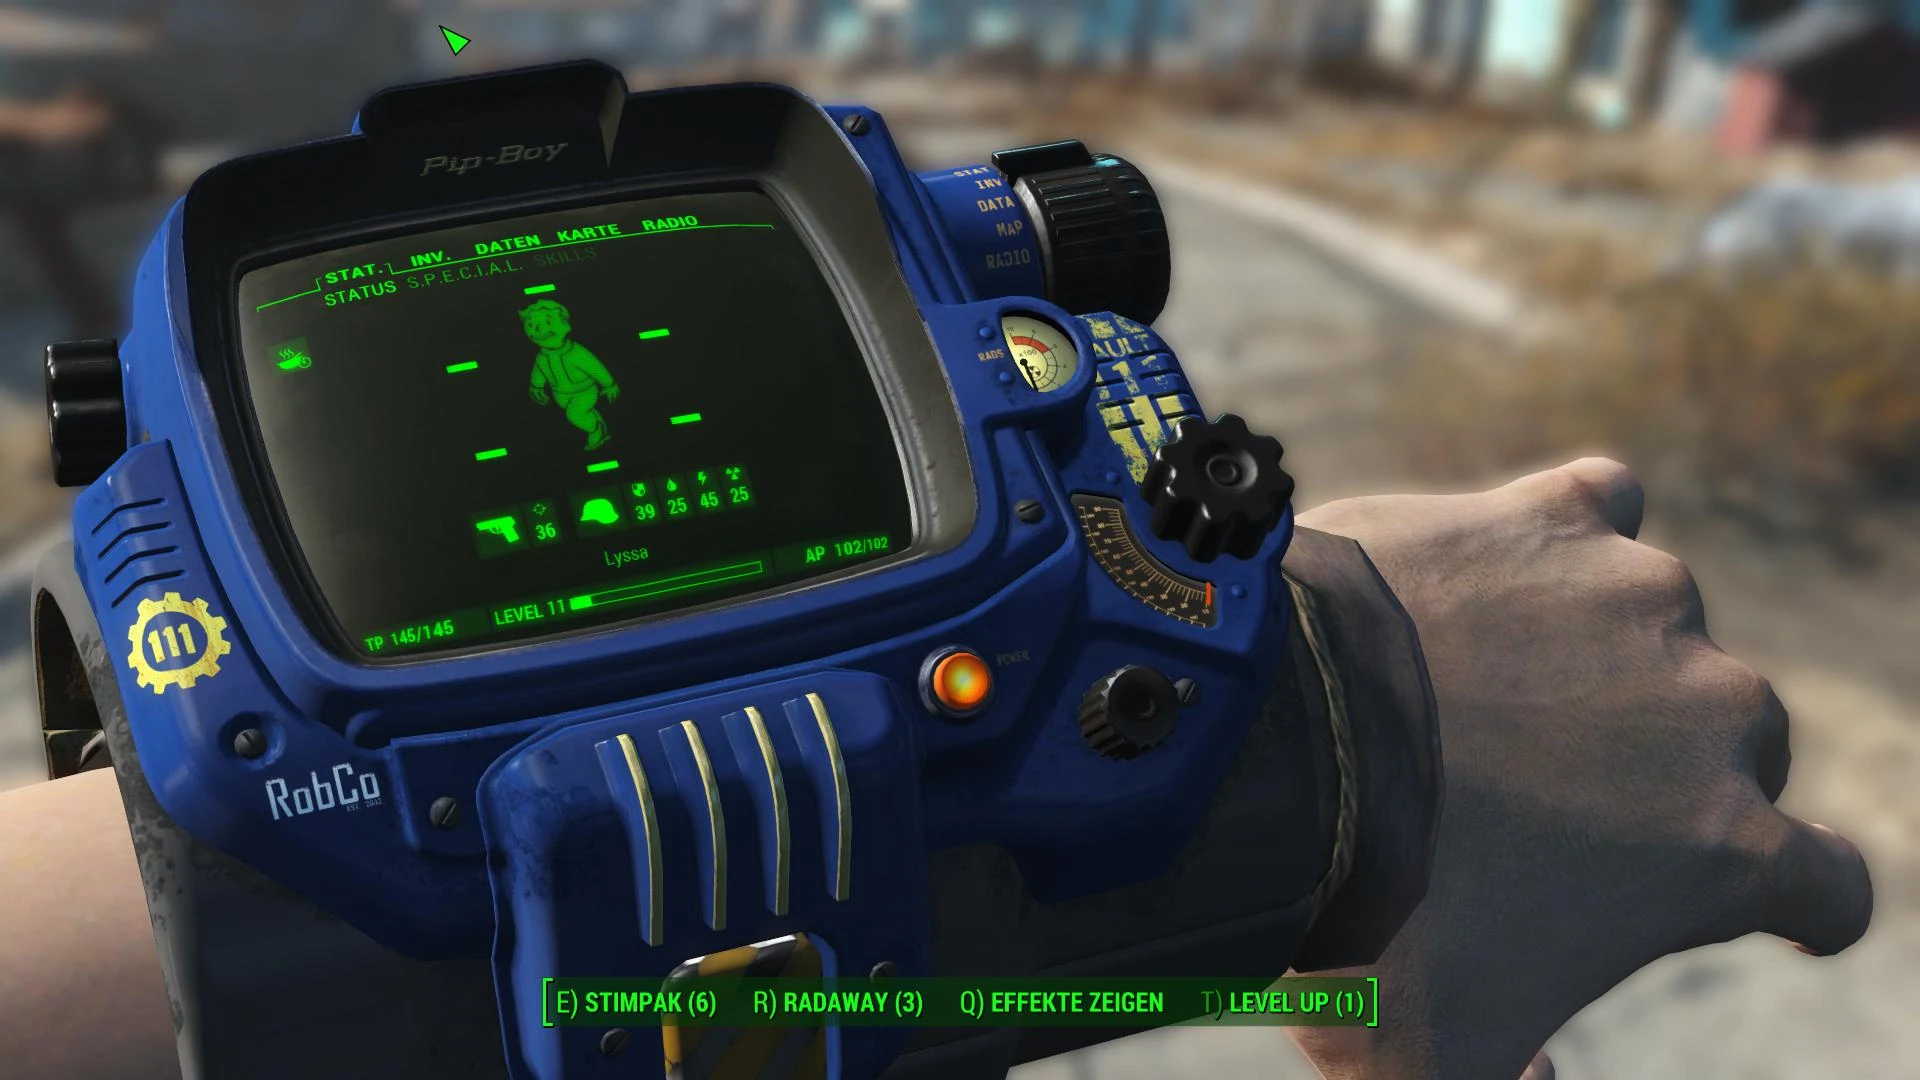 Fallout 4 как отдалить пип бой фото 111